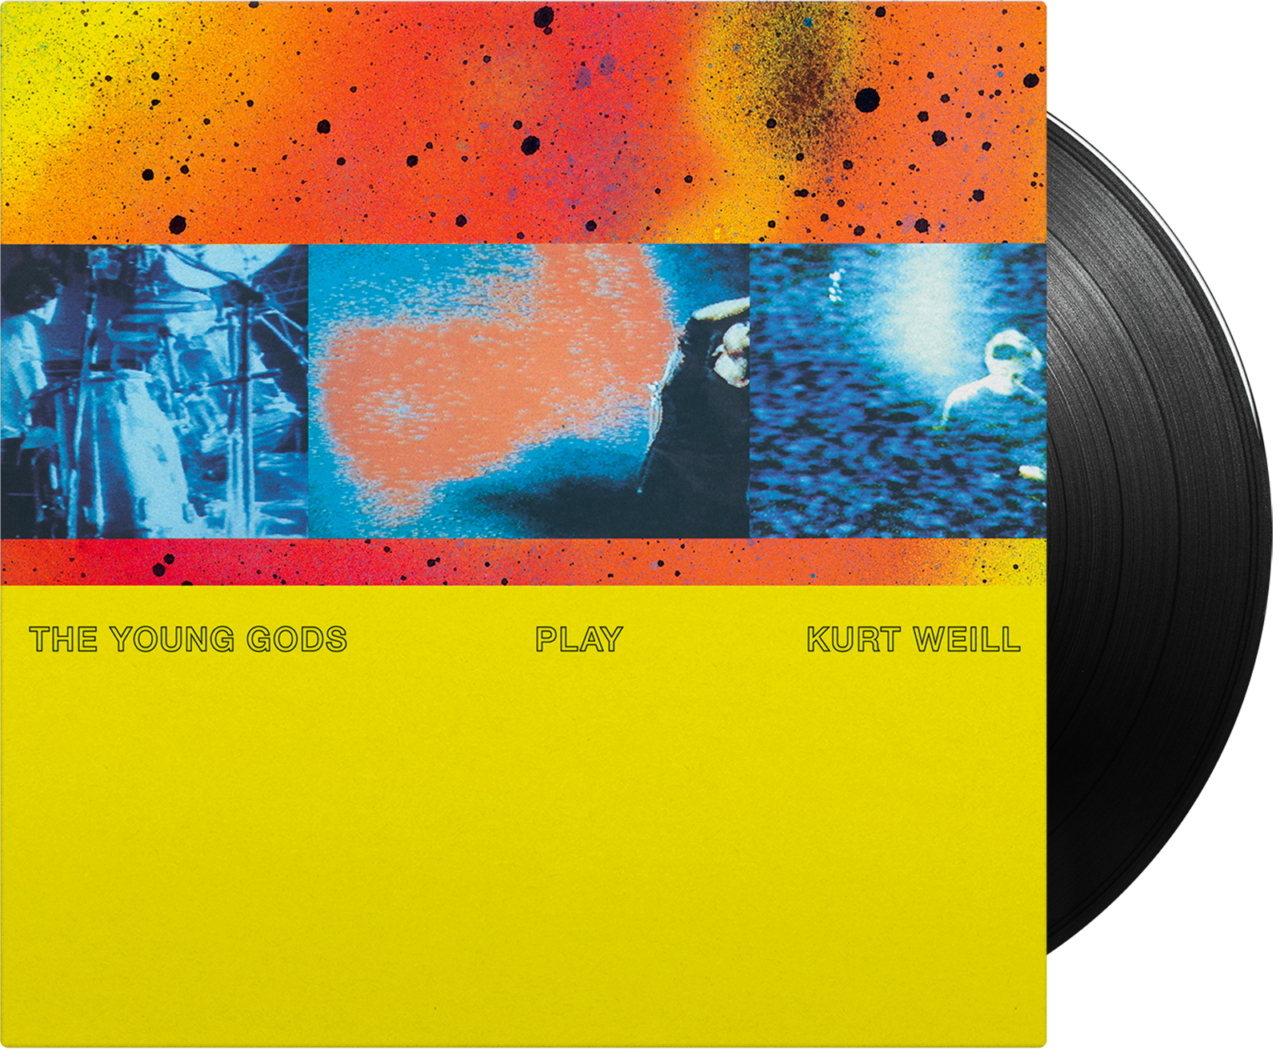 THE YOUNG GODS - Play Kurt Weill (30 Years Anniversary Vinyl Reissue)